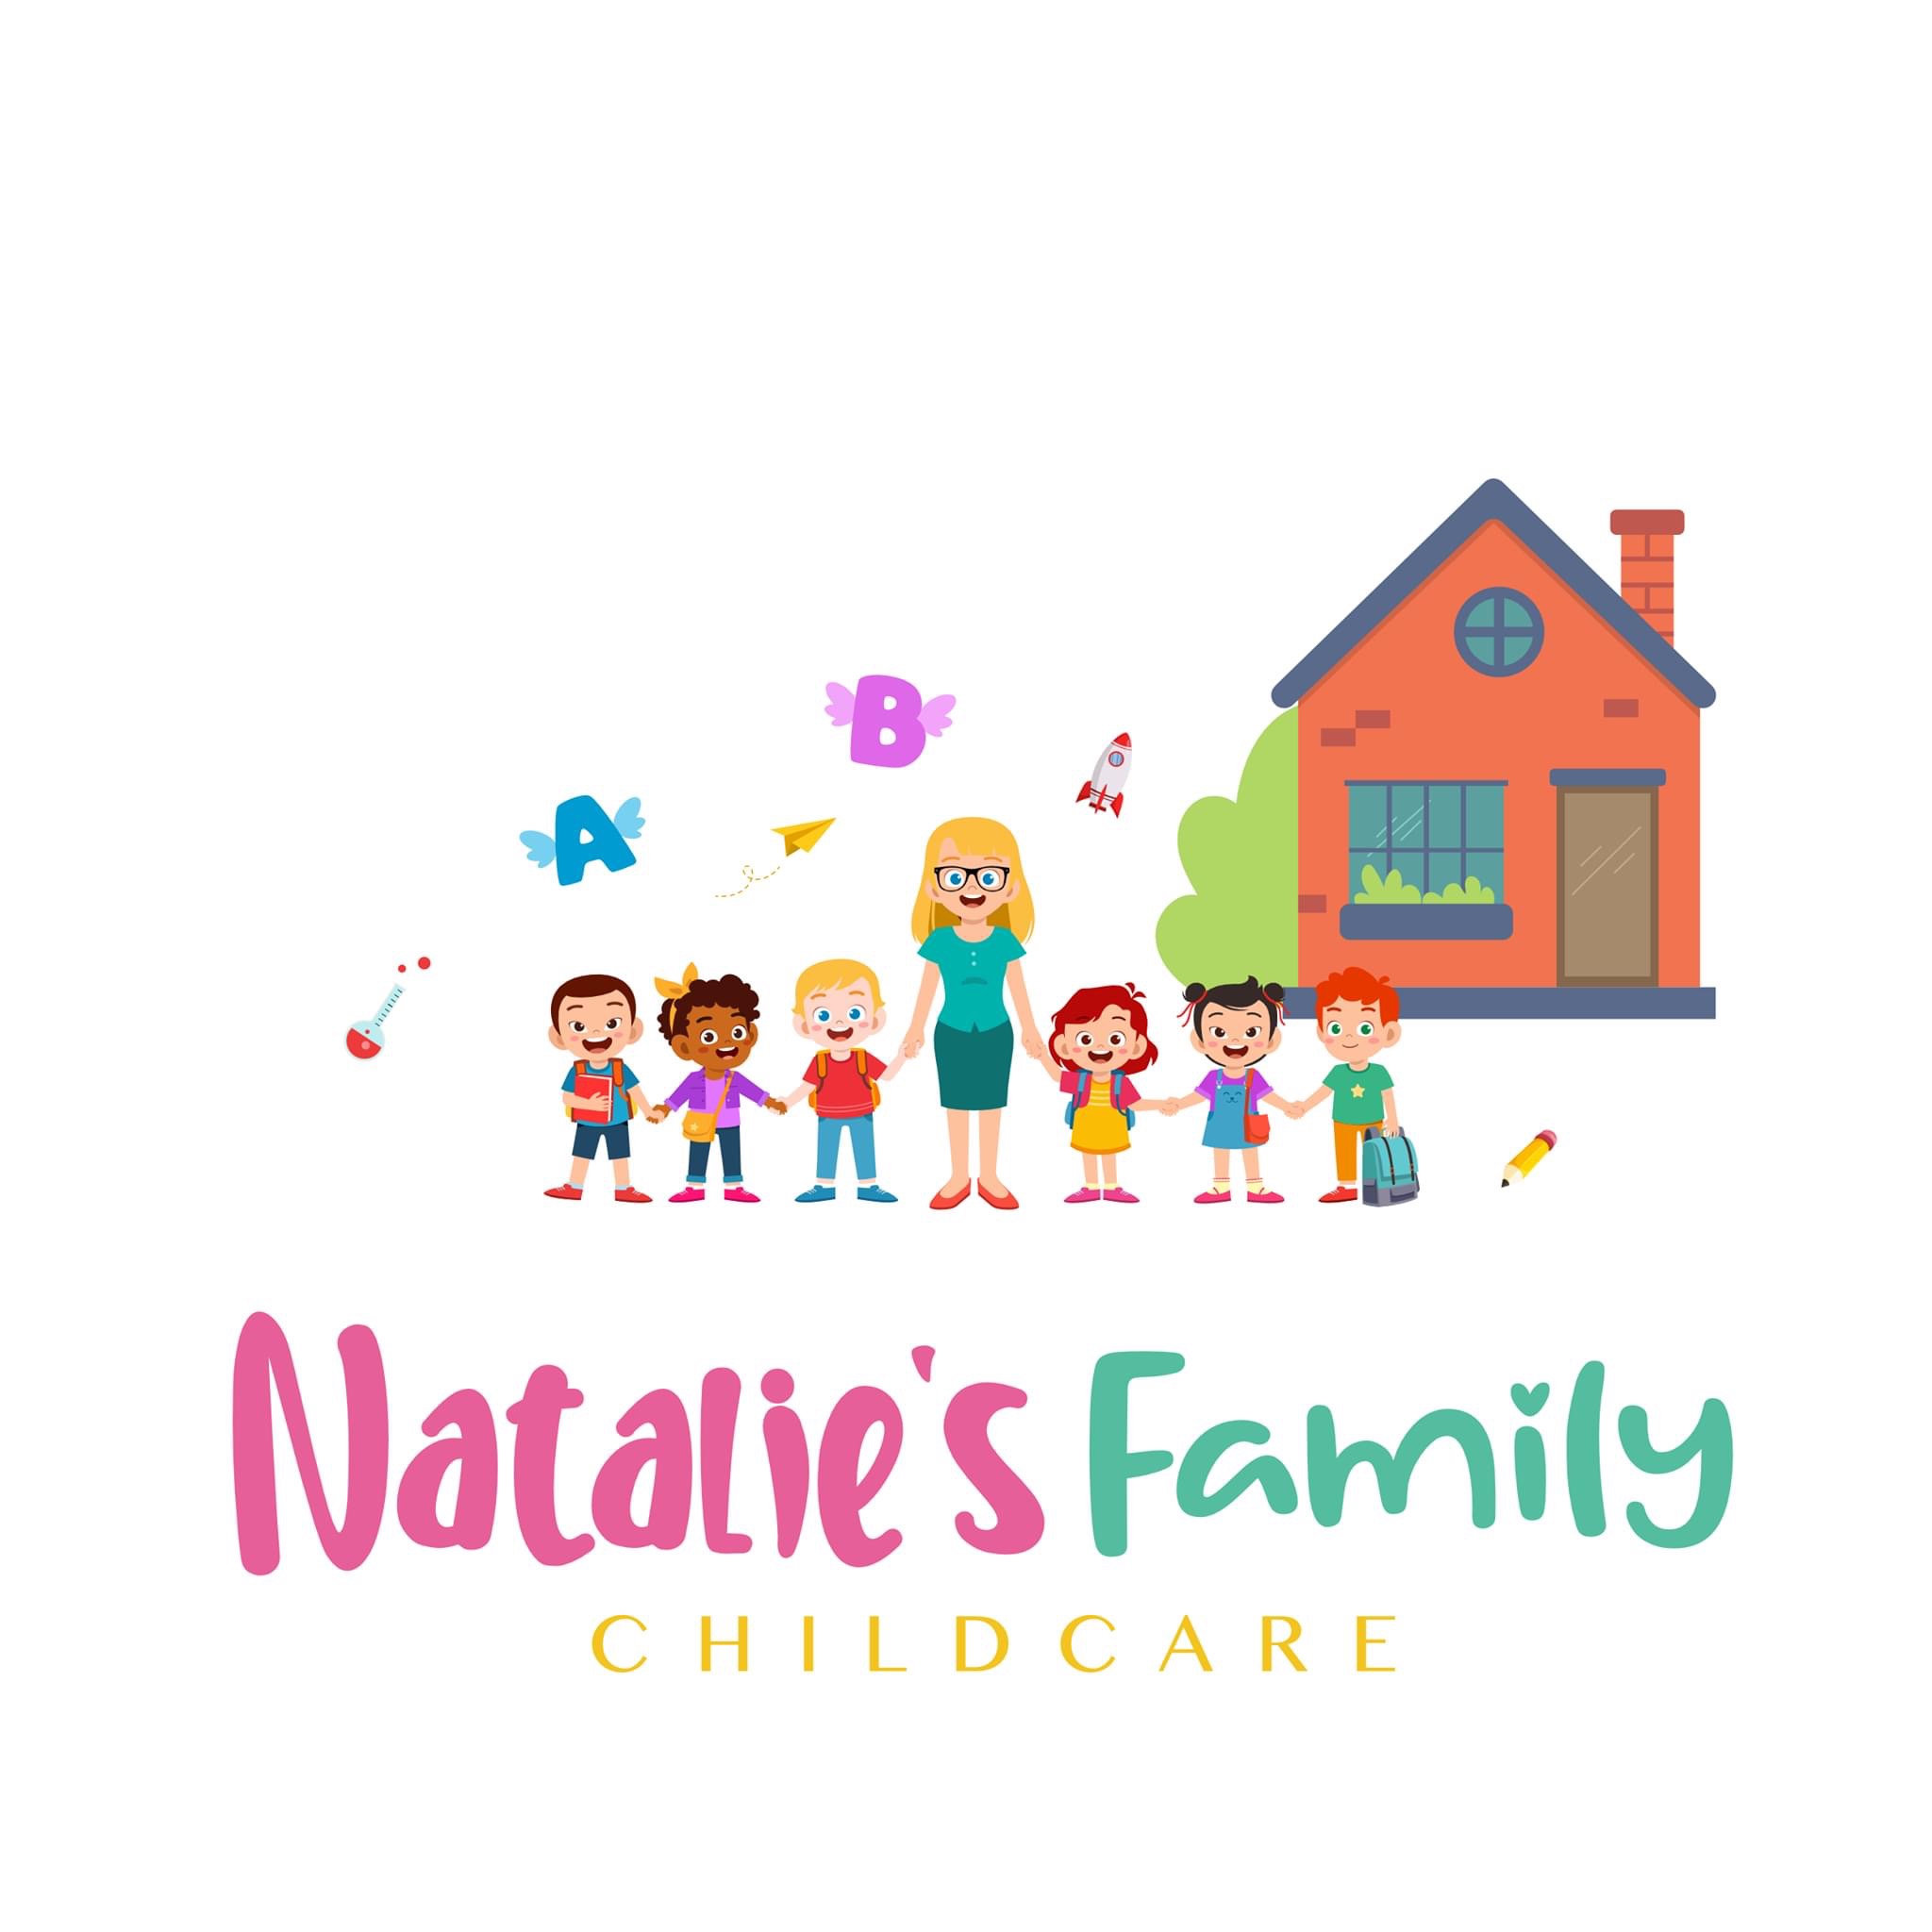 Natalie's Family Child Care